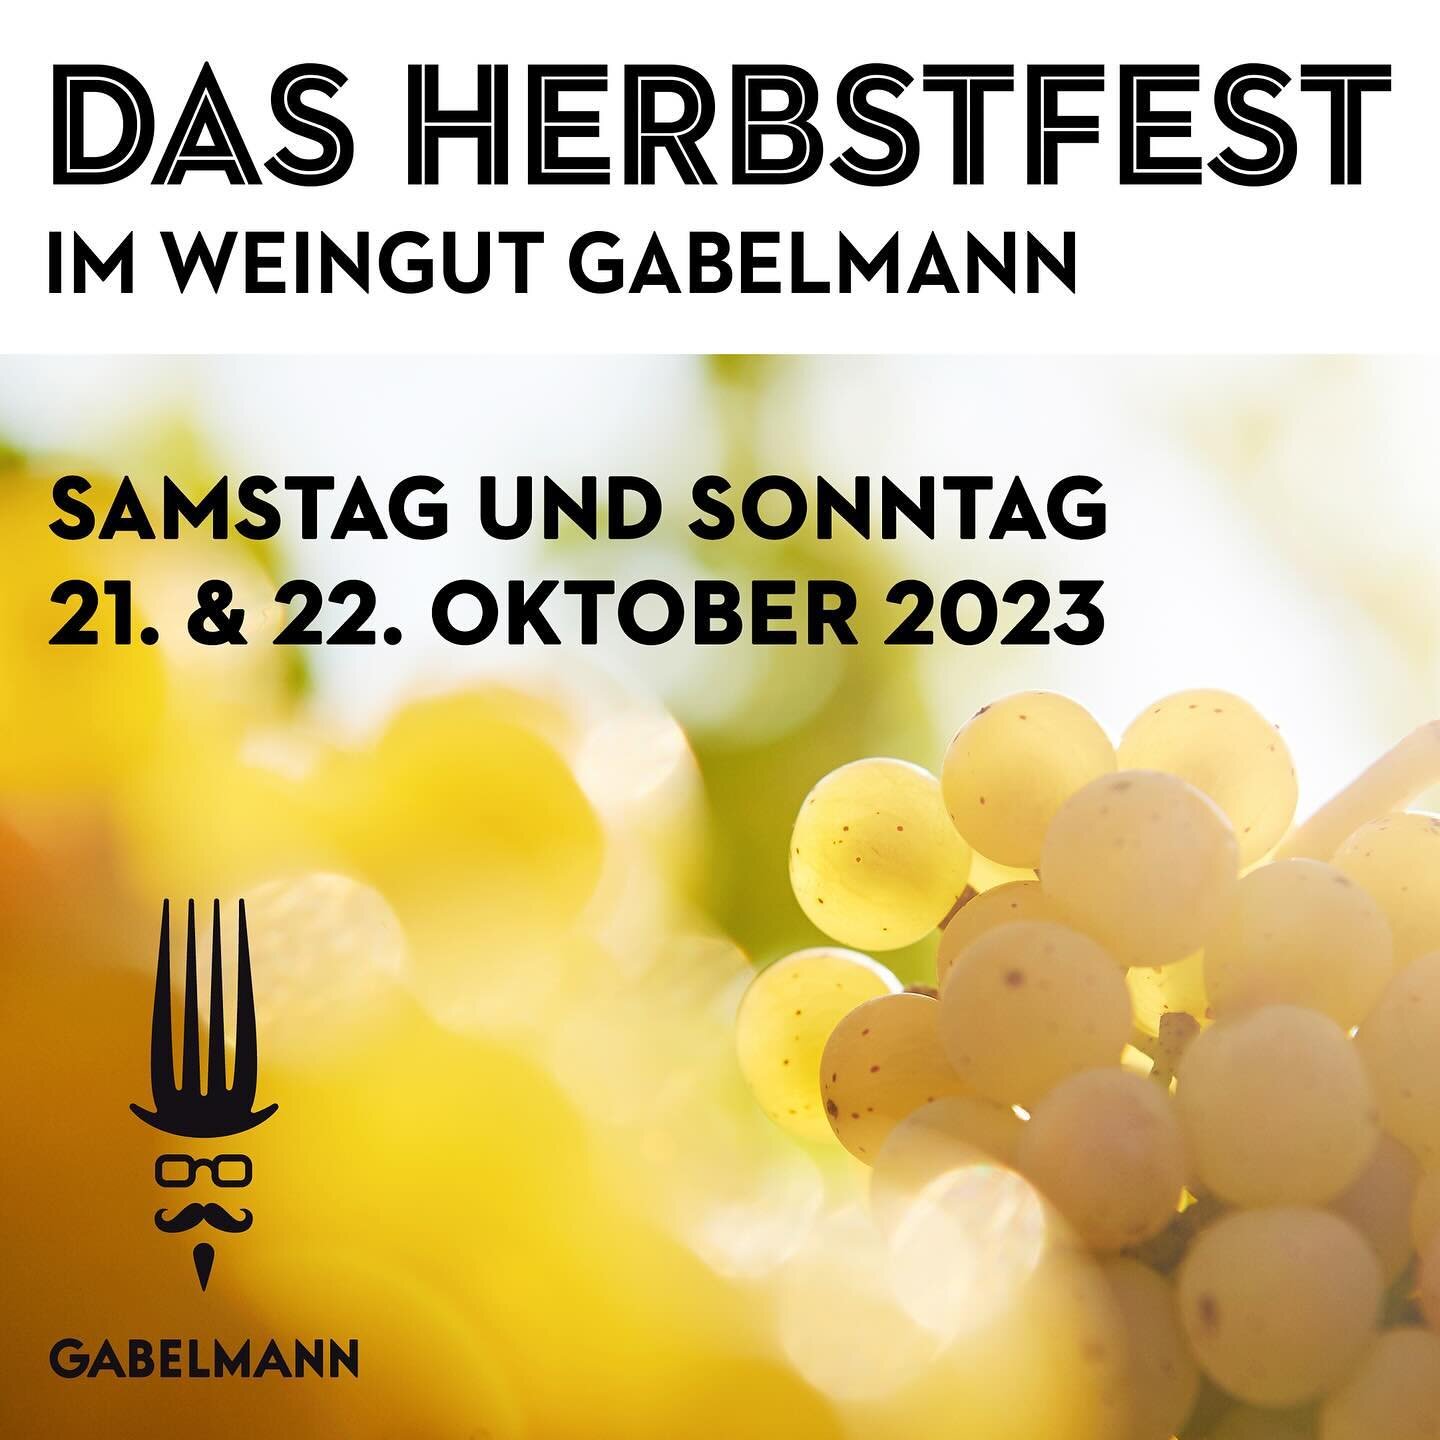 PREMIERE &ndash; Das #Herbstfest im Weingut Gabelmann

Liebe Weinfreunde,

wir m&ouml;chten mit Ihnen zusammen unseren #Herbstabschluss feiern!

Wie es fr&uuml;her war und heute noch in einigen #Weinregionen Bestand hat, wurde zum Abschluss der #Wein